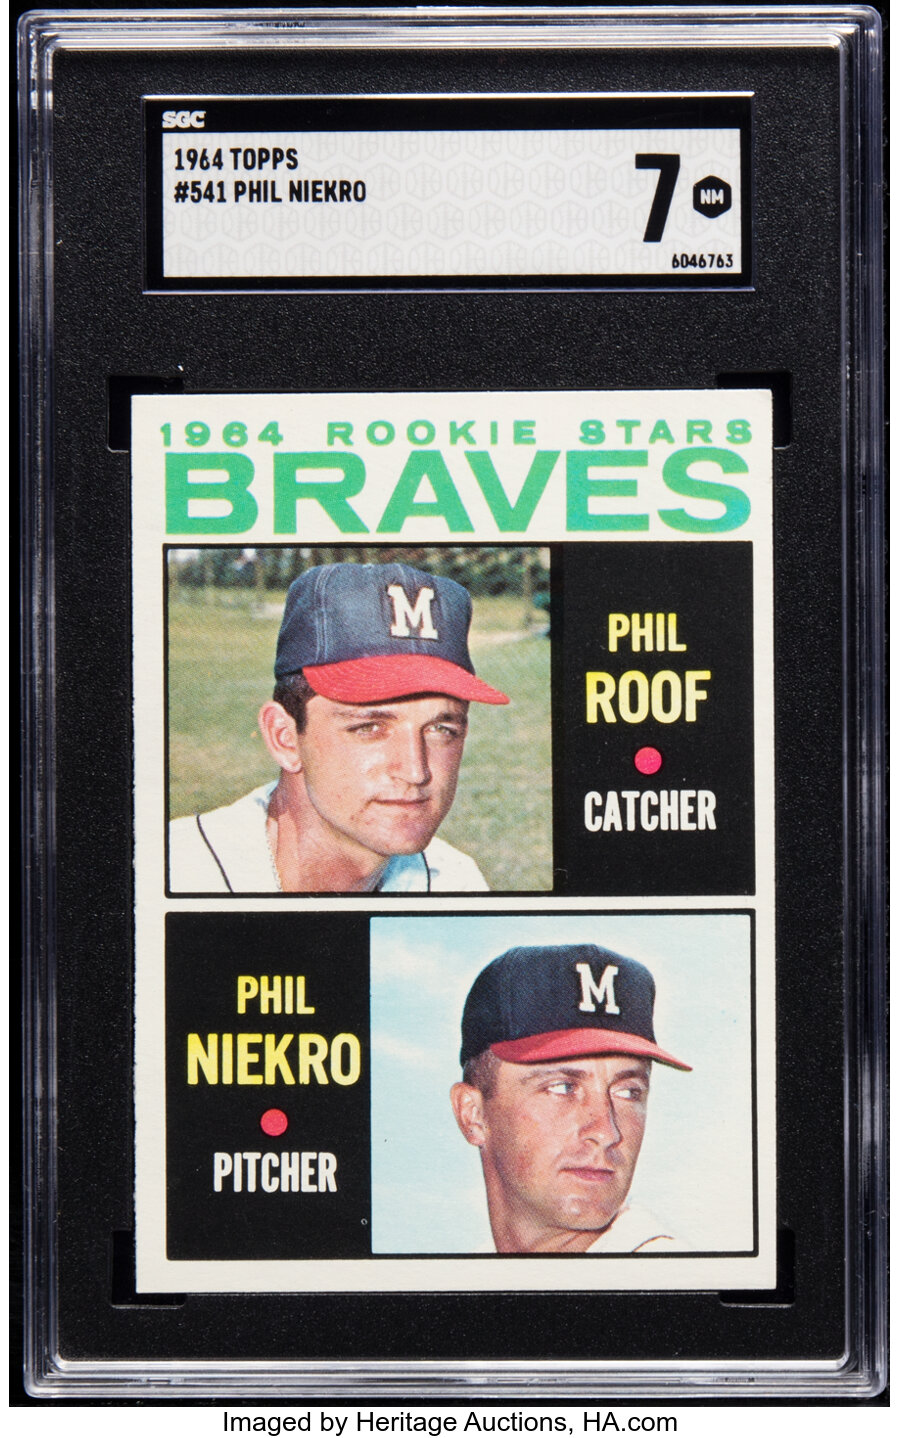 1964 Topps Phil Niekro - Braves Rookies #541 SGC NM 7